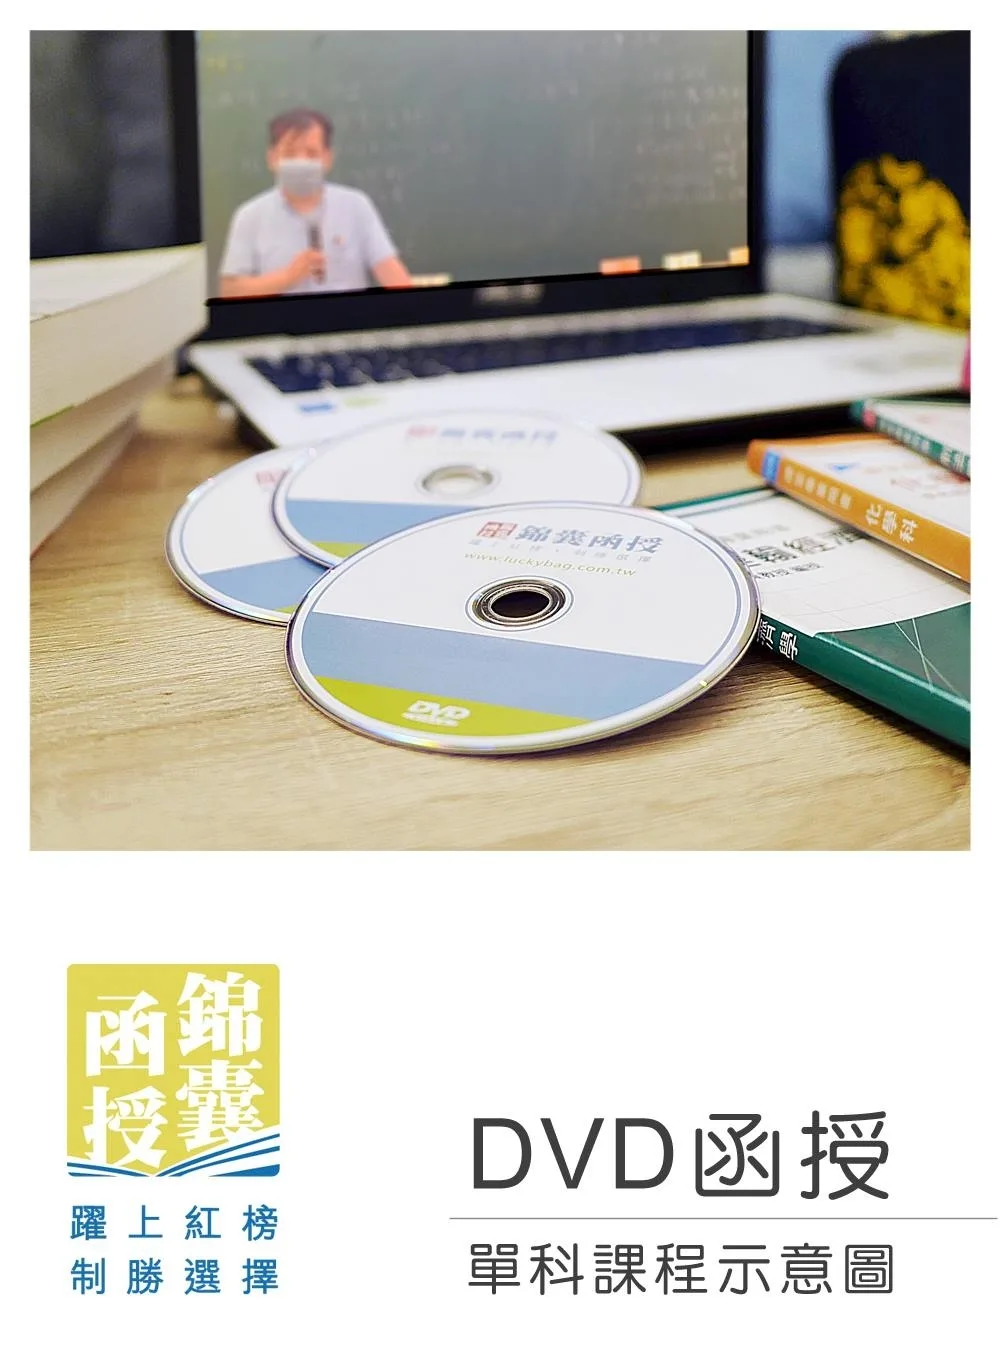 【DVD函授】強制執行法-單科課程(111版)